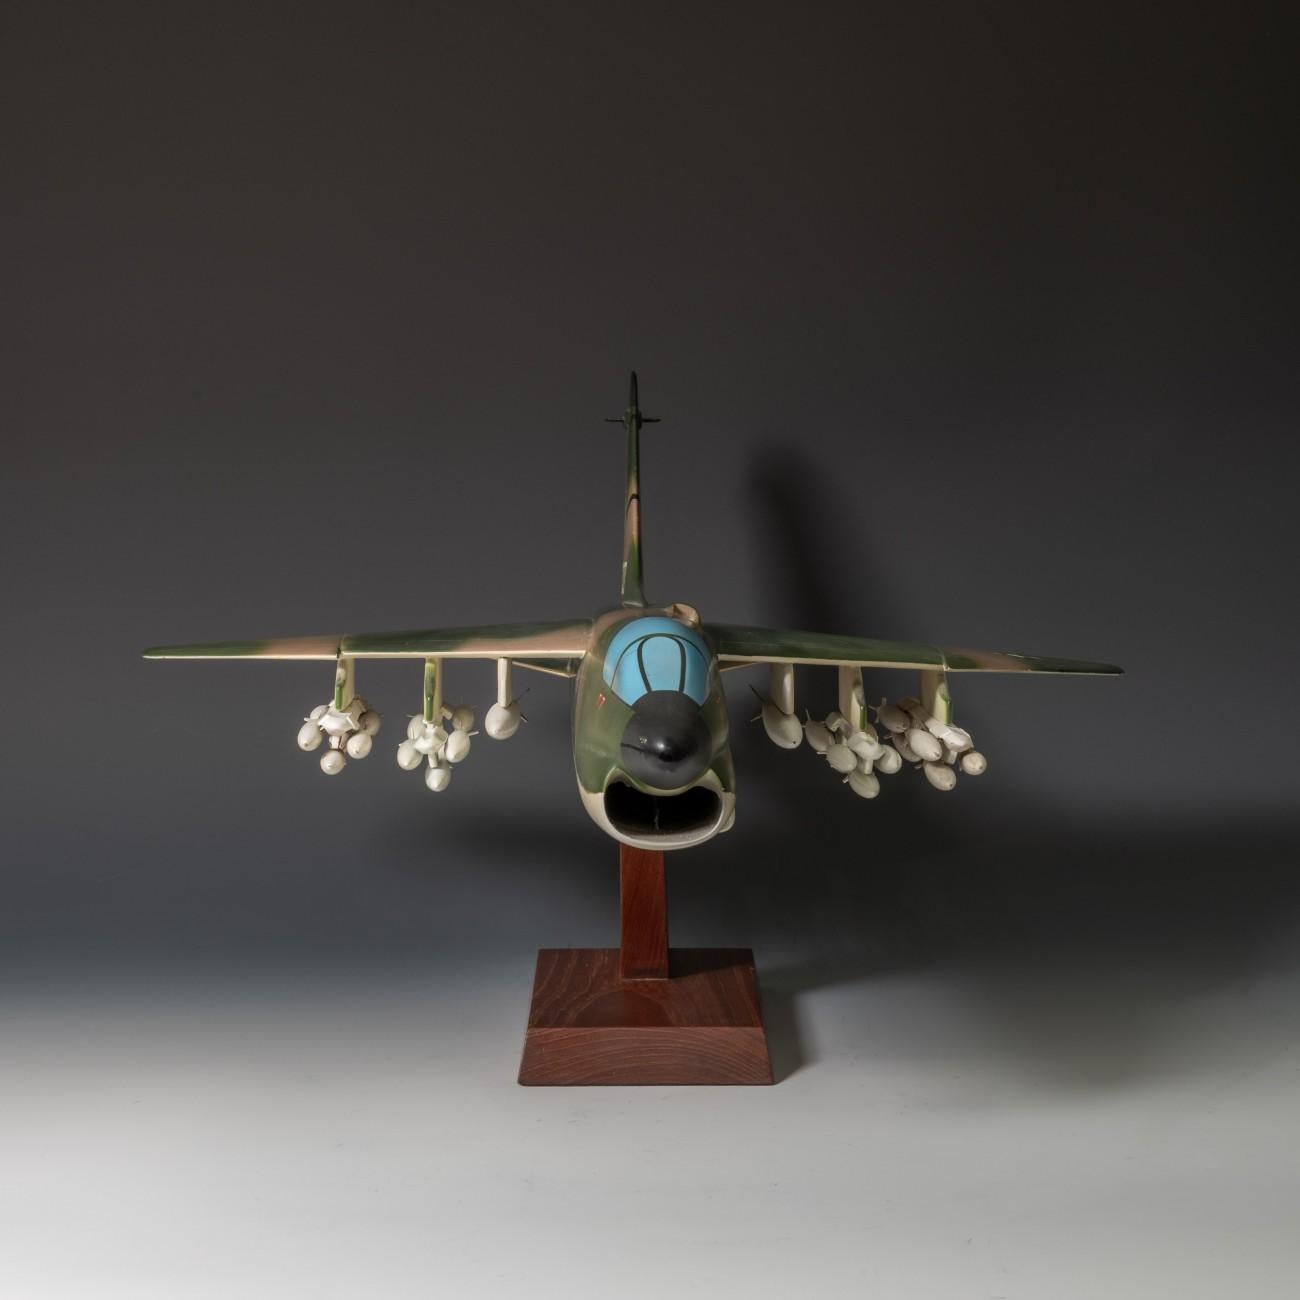 Néerlandais Modèle réduit d'avion de chasse Corsair II de la USAF LTV A-7 en vente